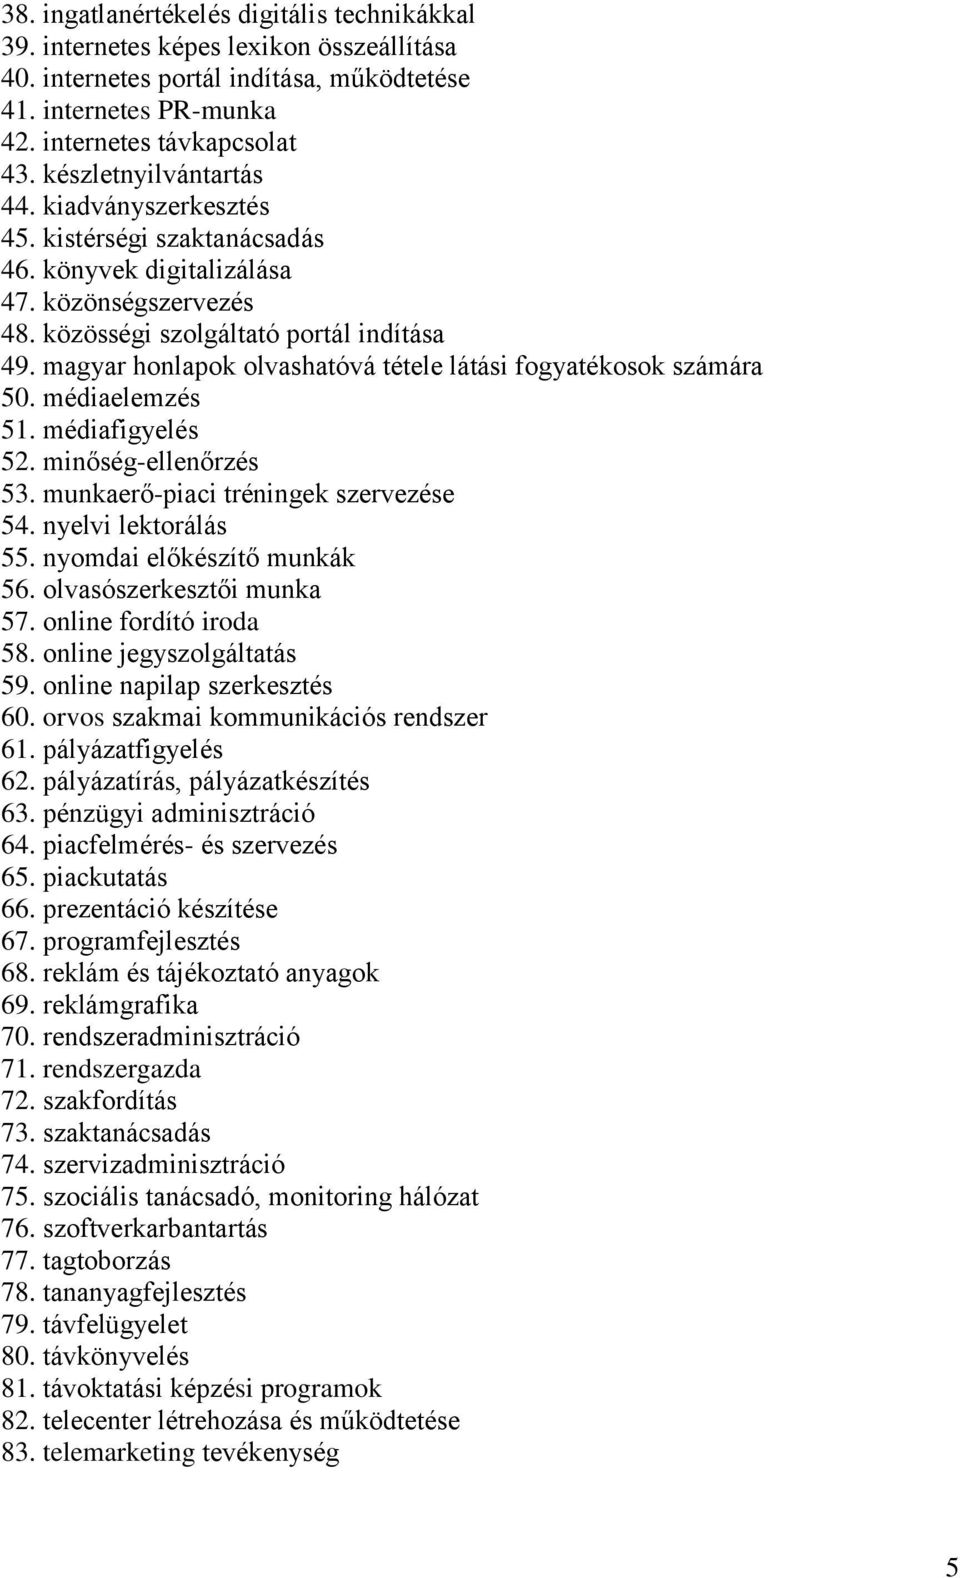 magyar honlapok olvashatóvá tétele látási fogyatékosok számára 50. médiaelemzés 51. médiafigyelés 52. minőség-ellenőrzés 53. munkaerő-piaci tréningek szervezése 54. nyelvi lektorálás 55.